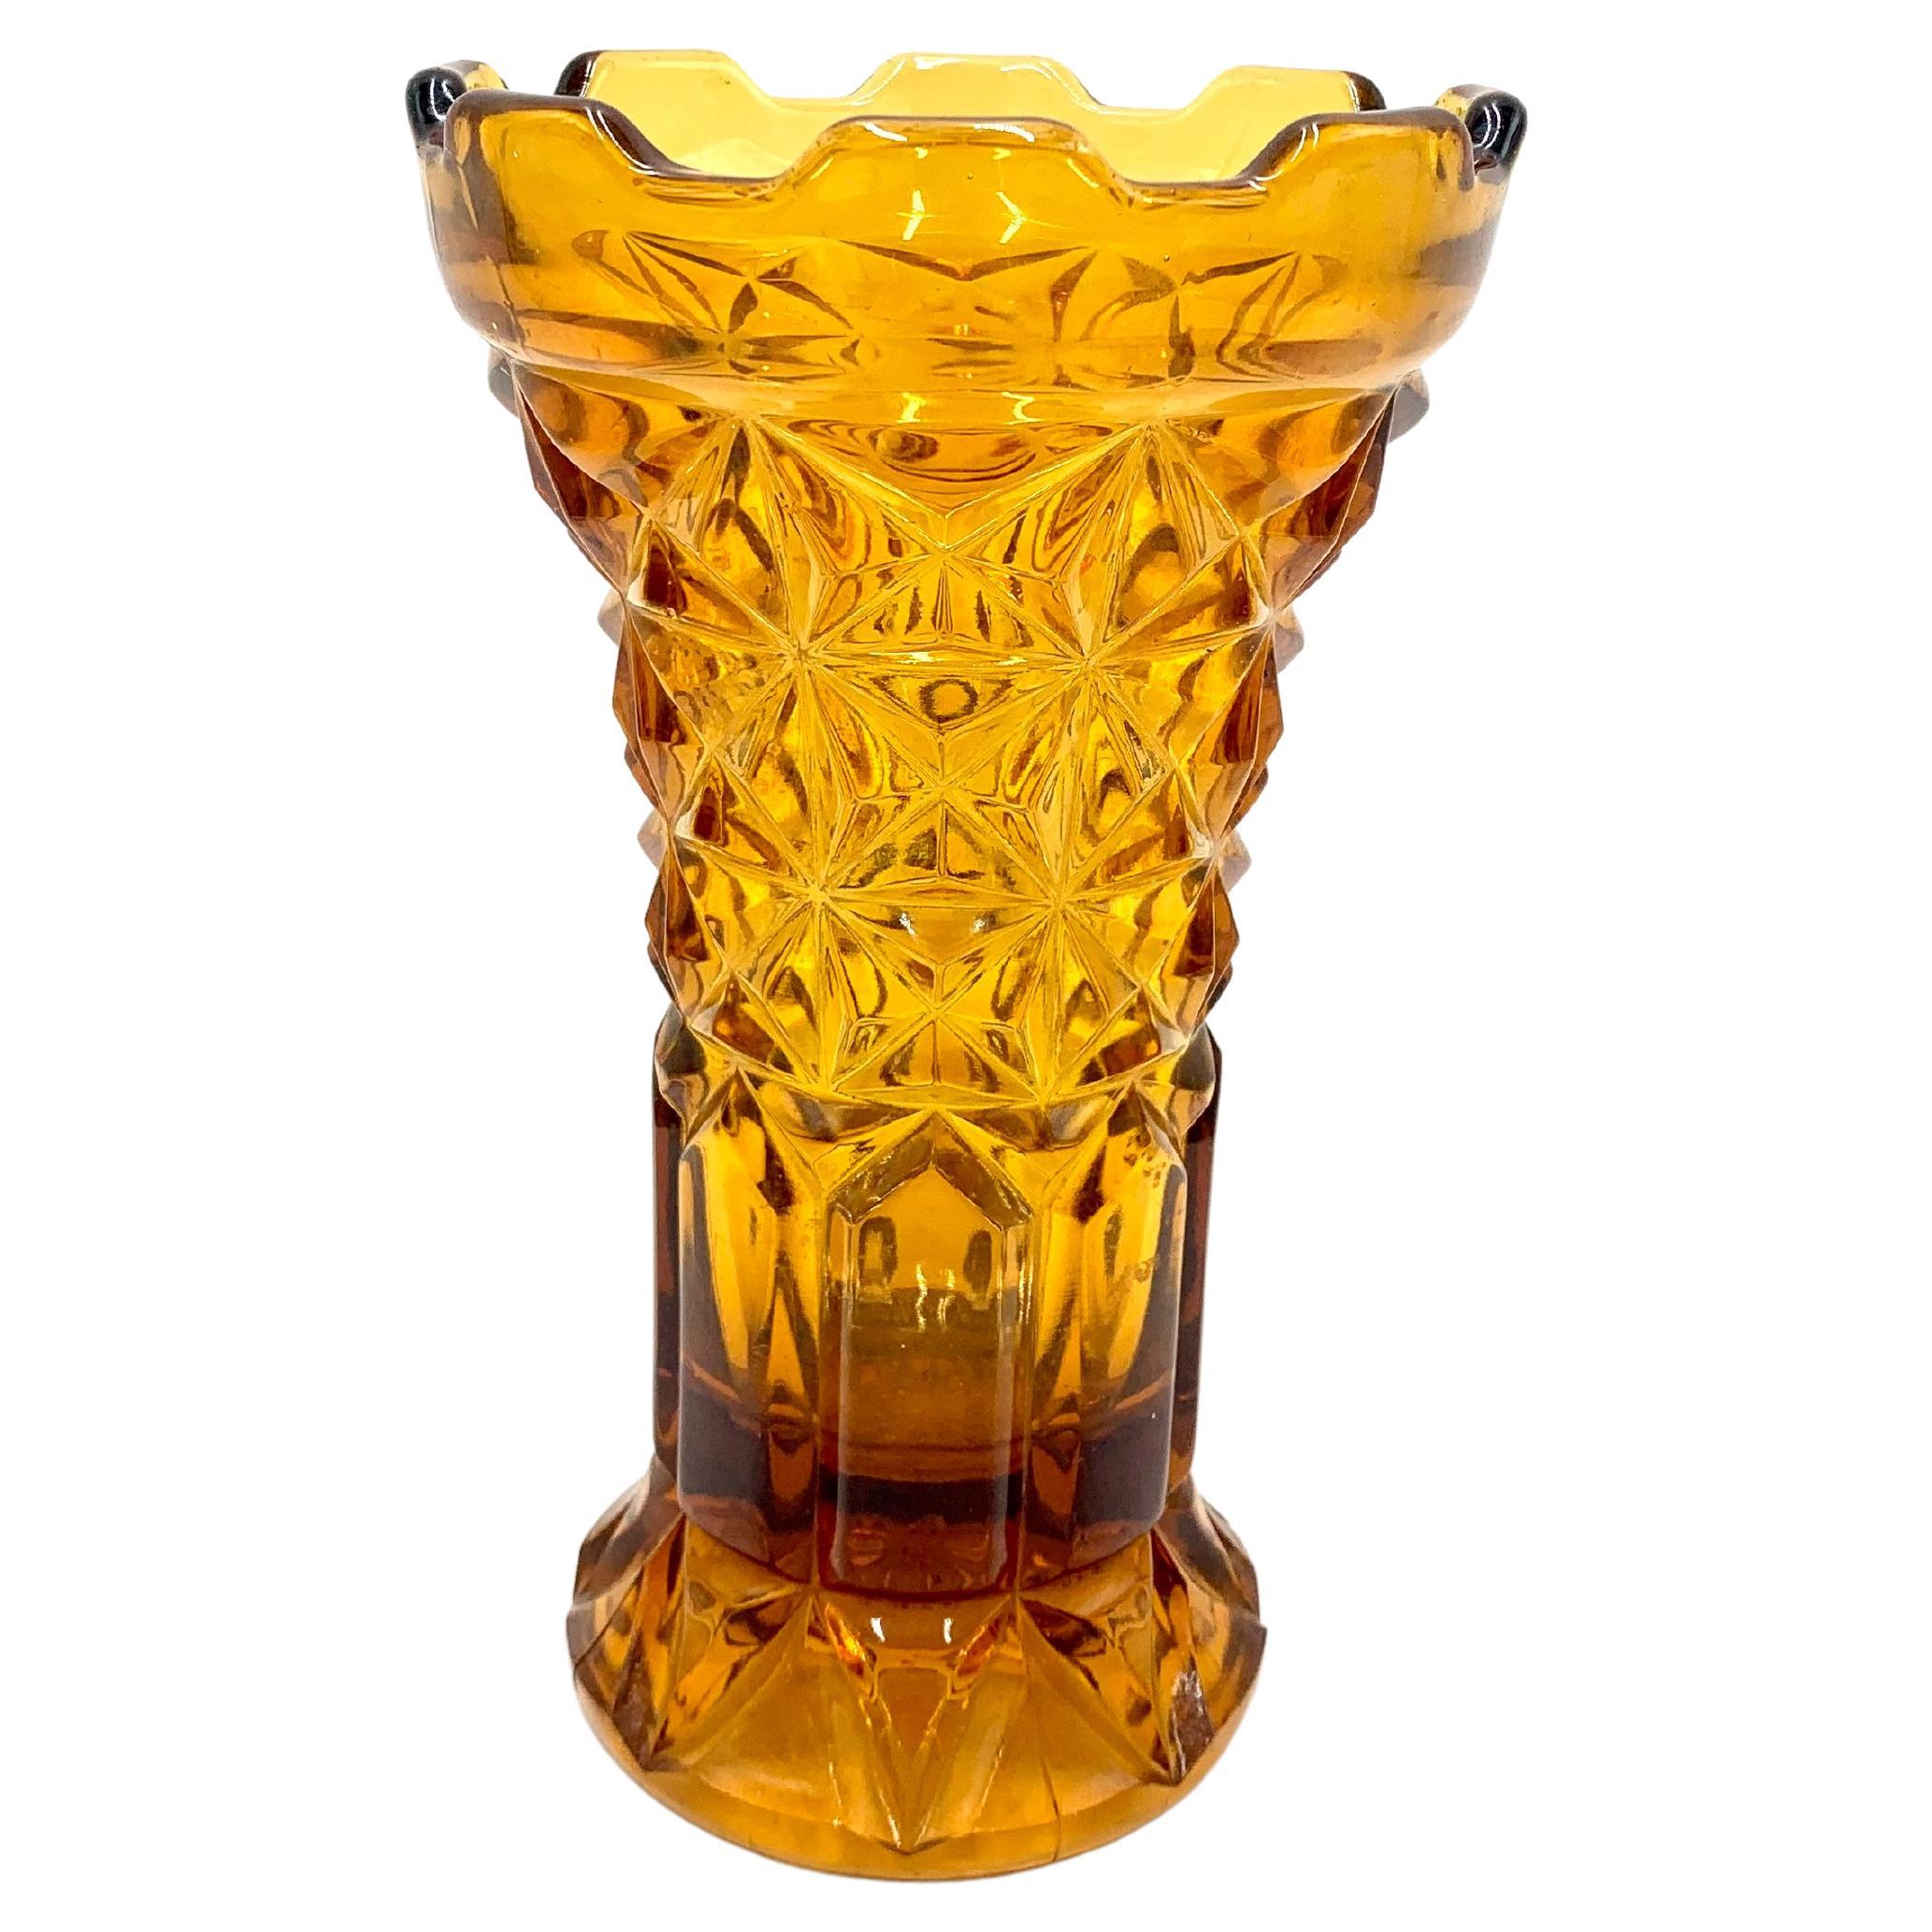 Honey Vintage Vase, Poland, 1960s / 1970s